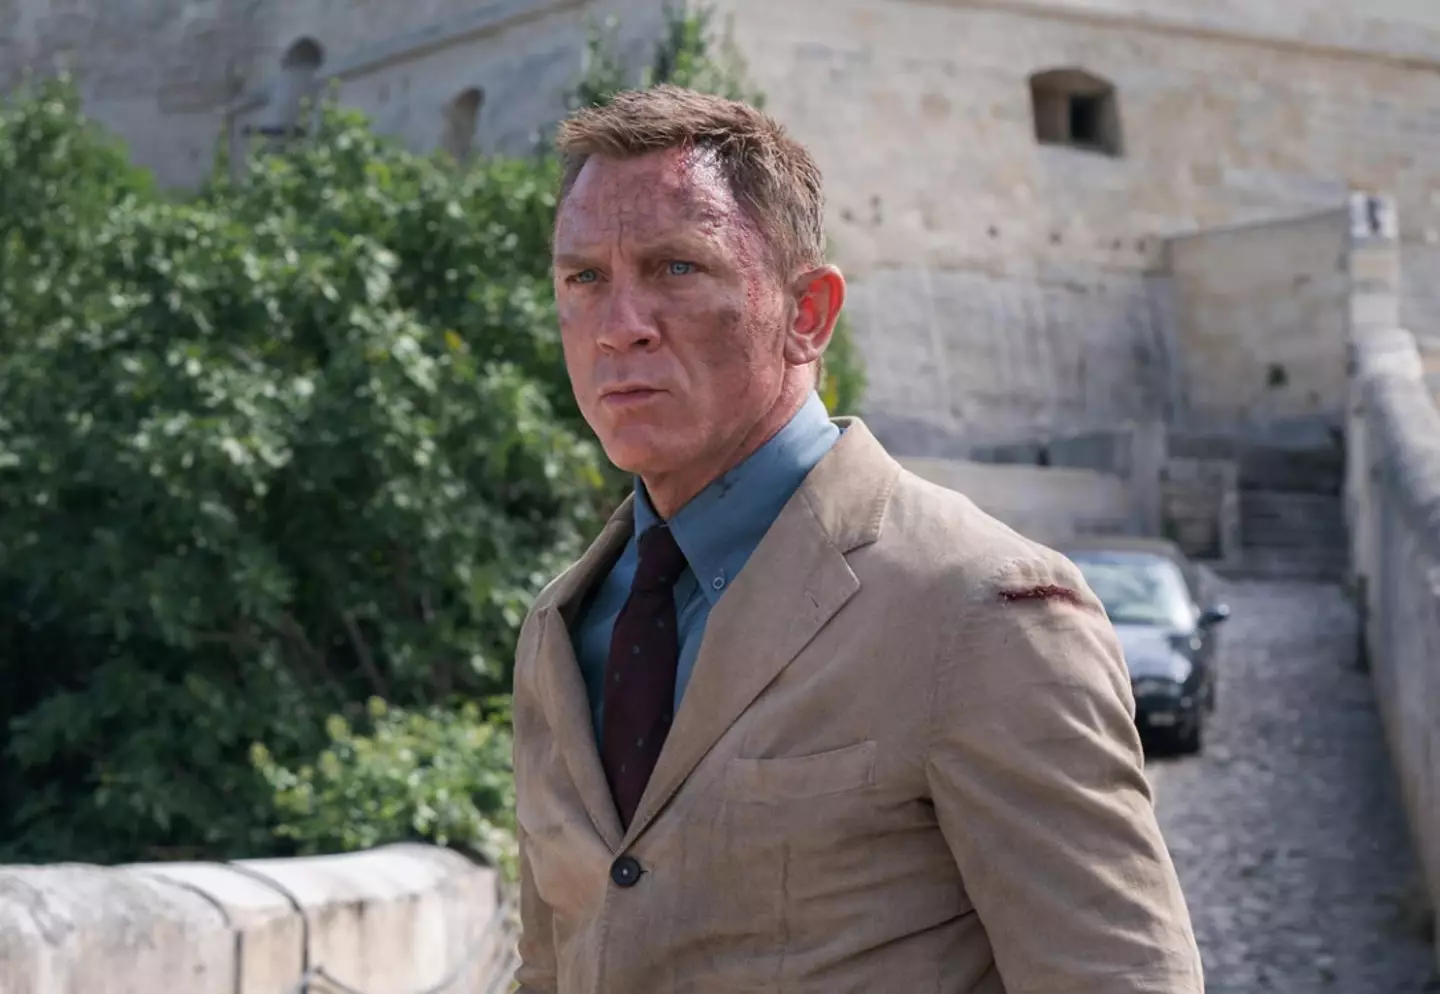 James Bond is based on Ian Fleming's spy series.